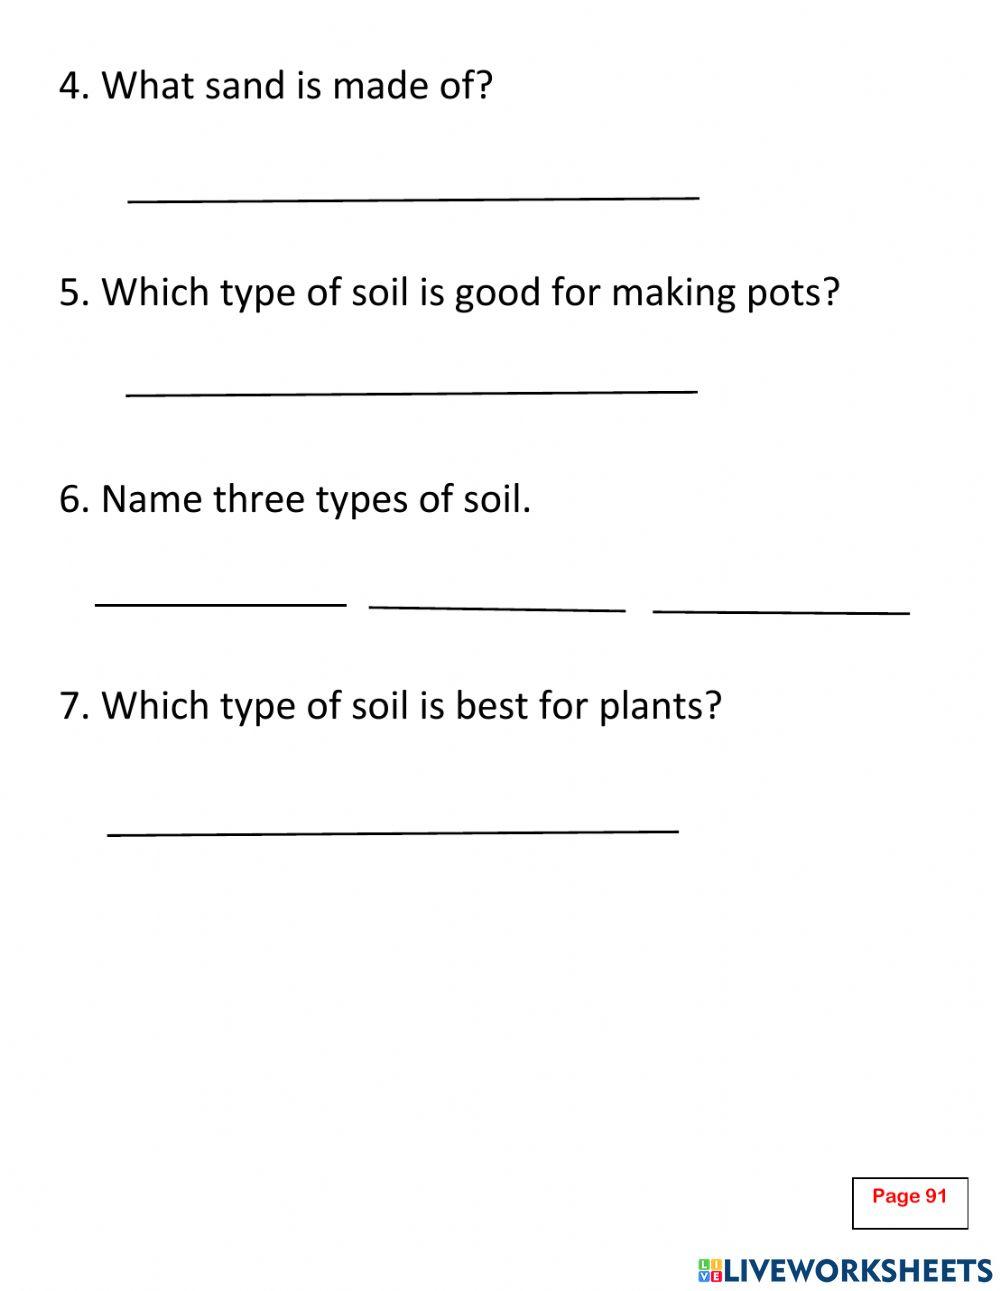 Week 16 act.2: Types of soil